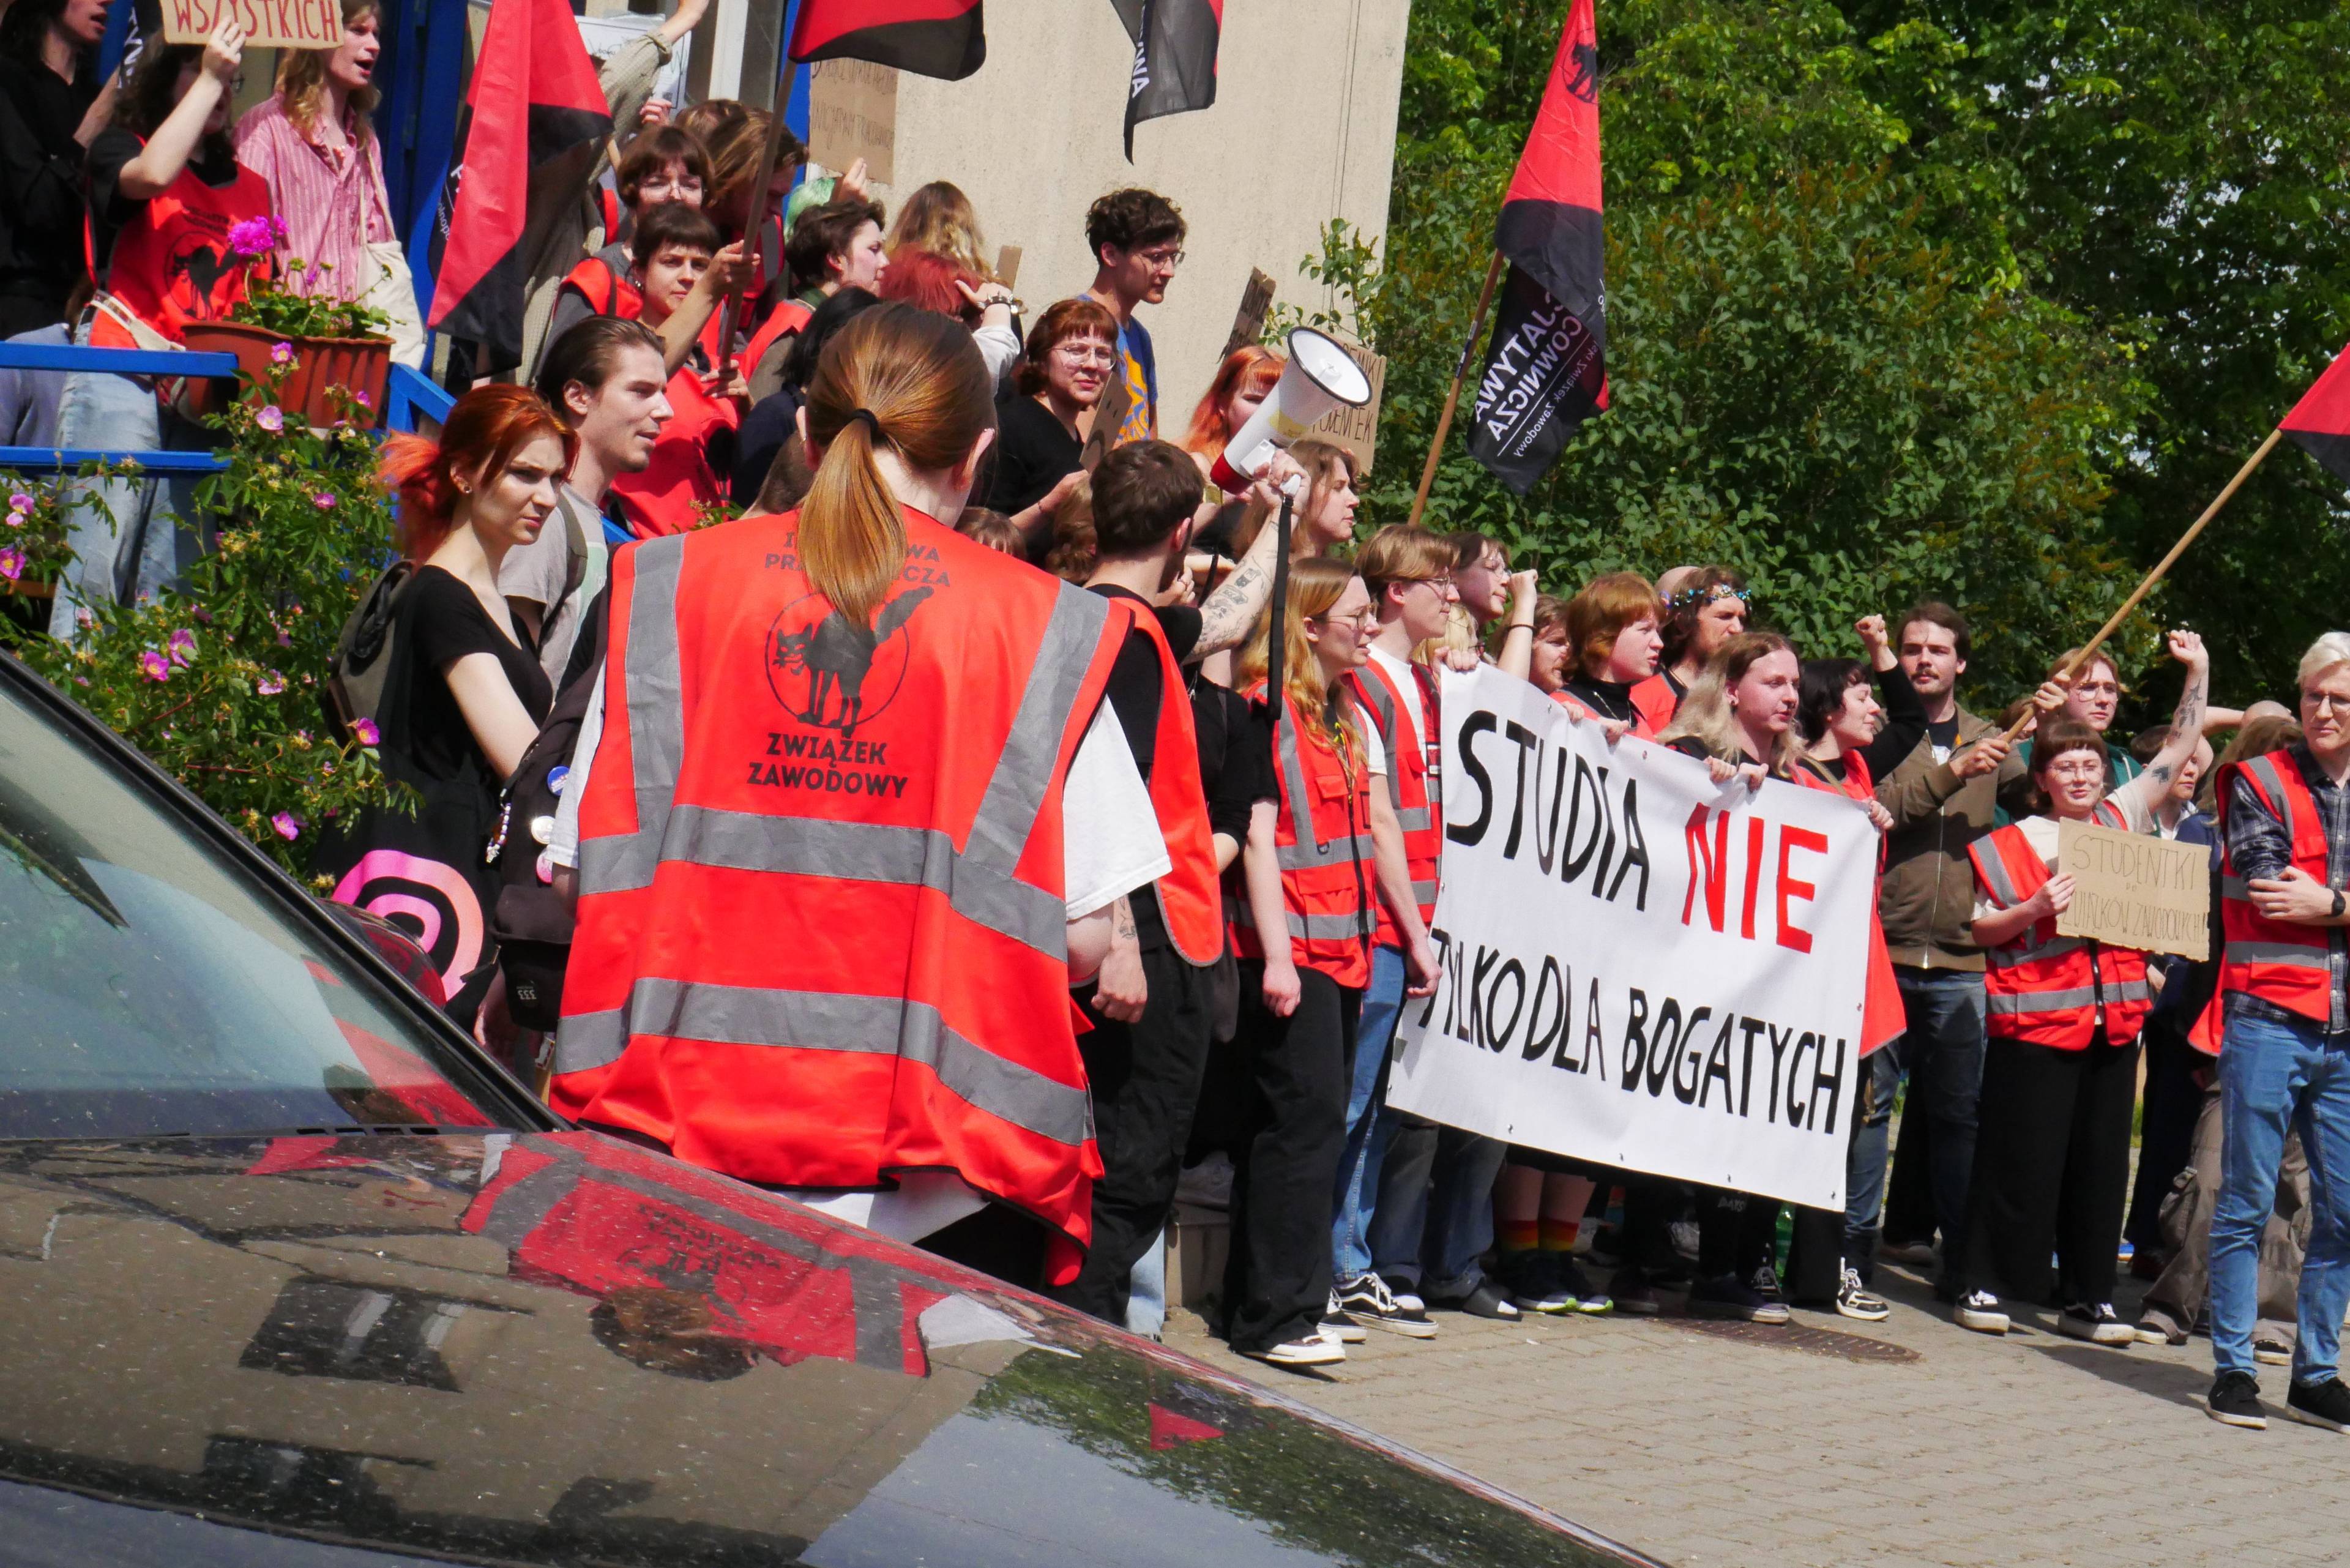 studenci protestujący przed budynkiem akademika w czerwonych kamizelkach. baner z napisem "studia nie tylko dla bogatych"